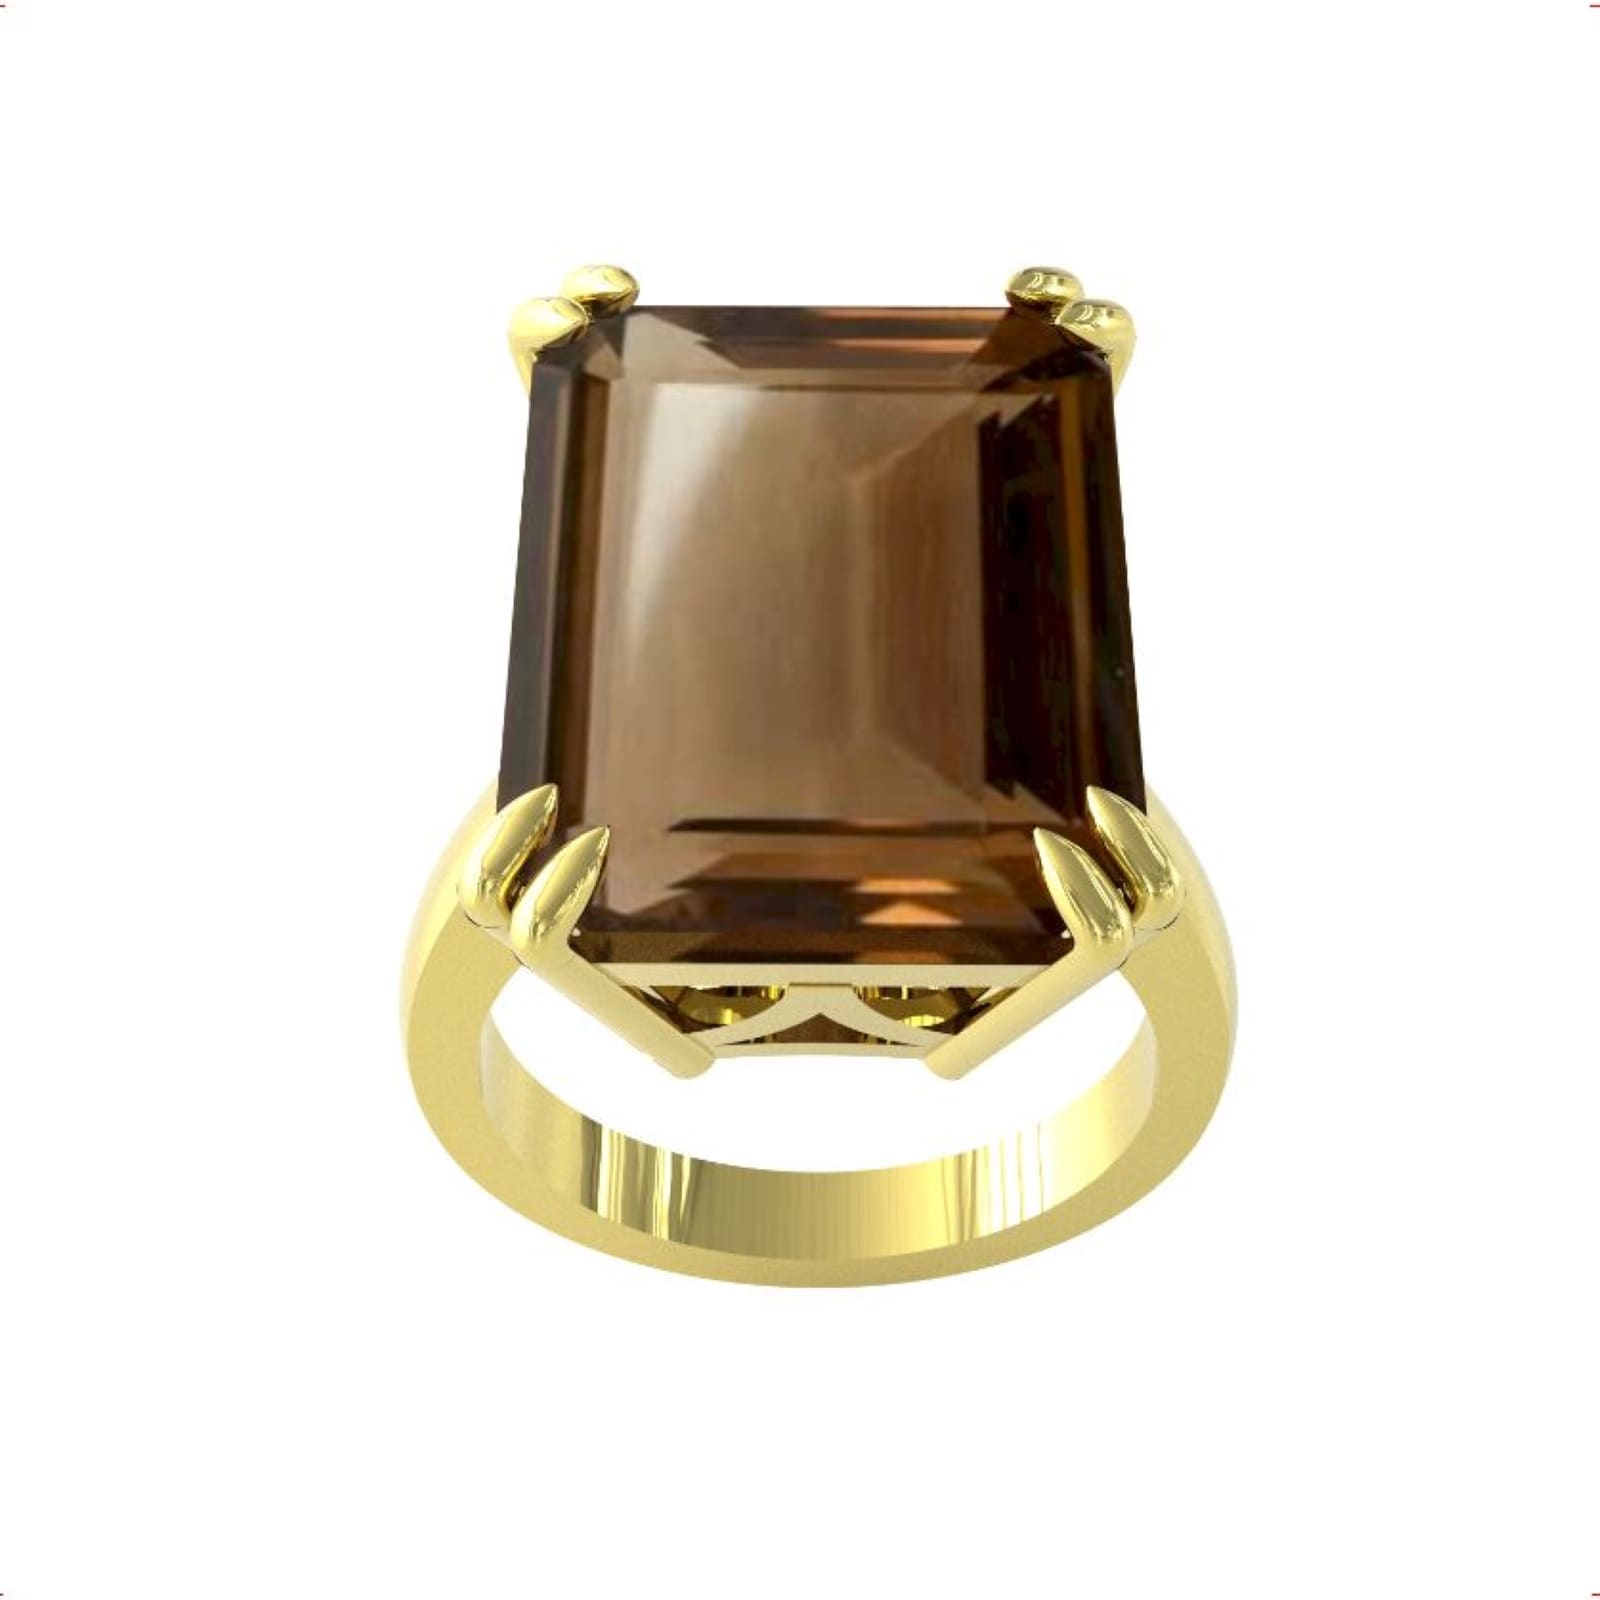 9ct Yellow Gold Emerald Cut Smokey Quartz Ring - Ring Size I.5